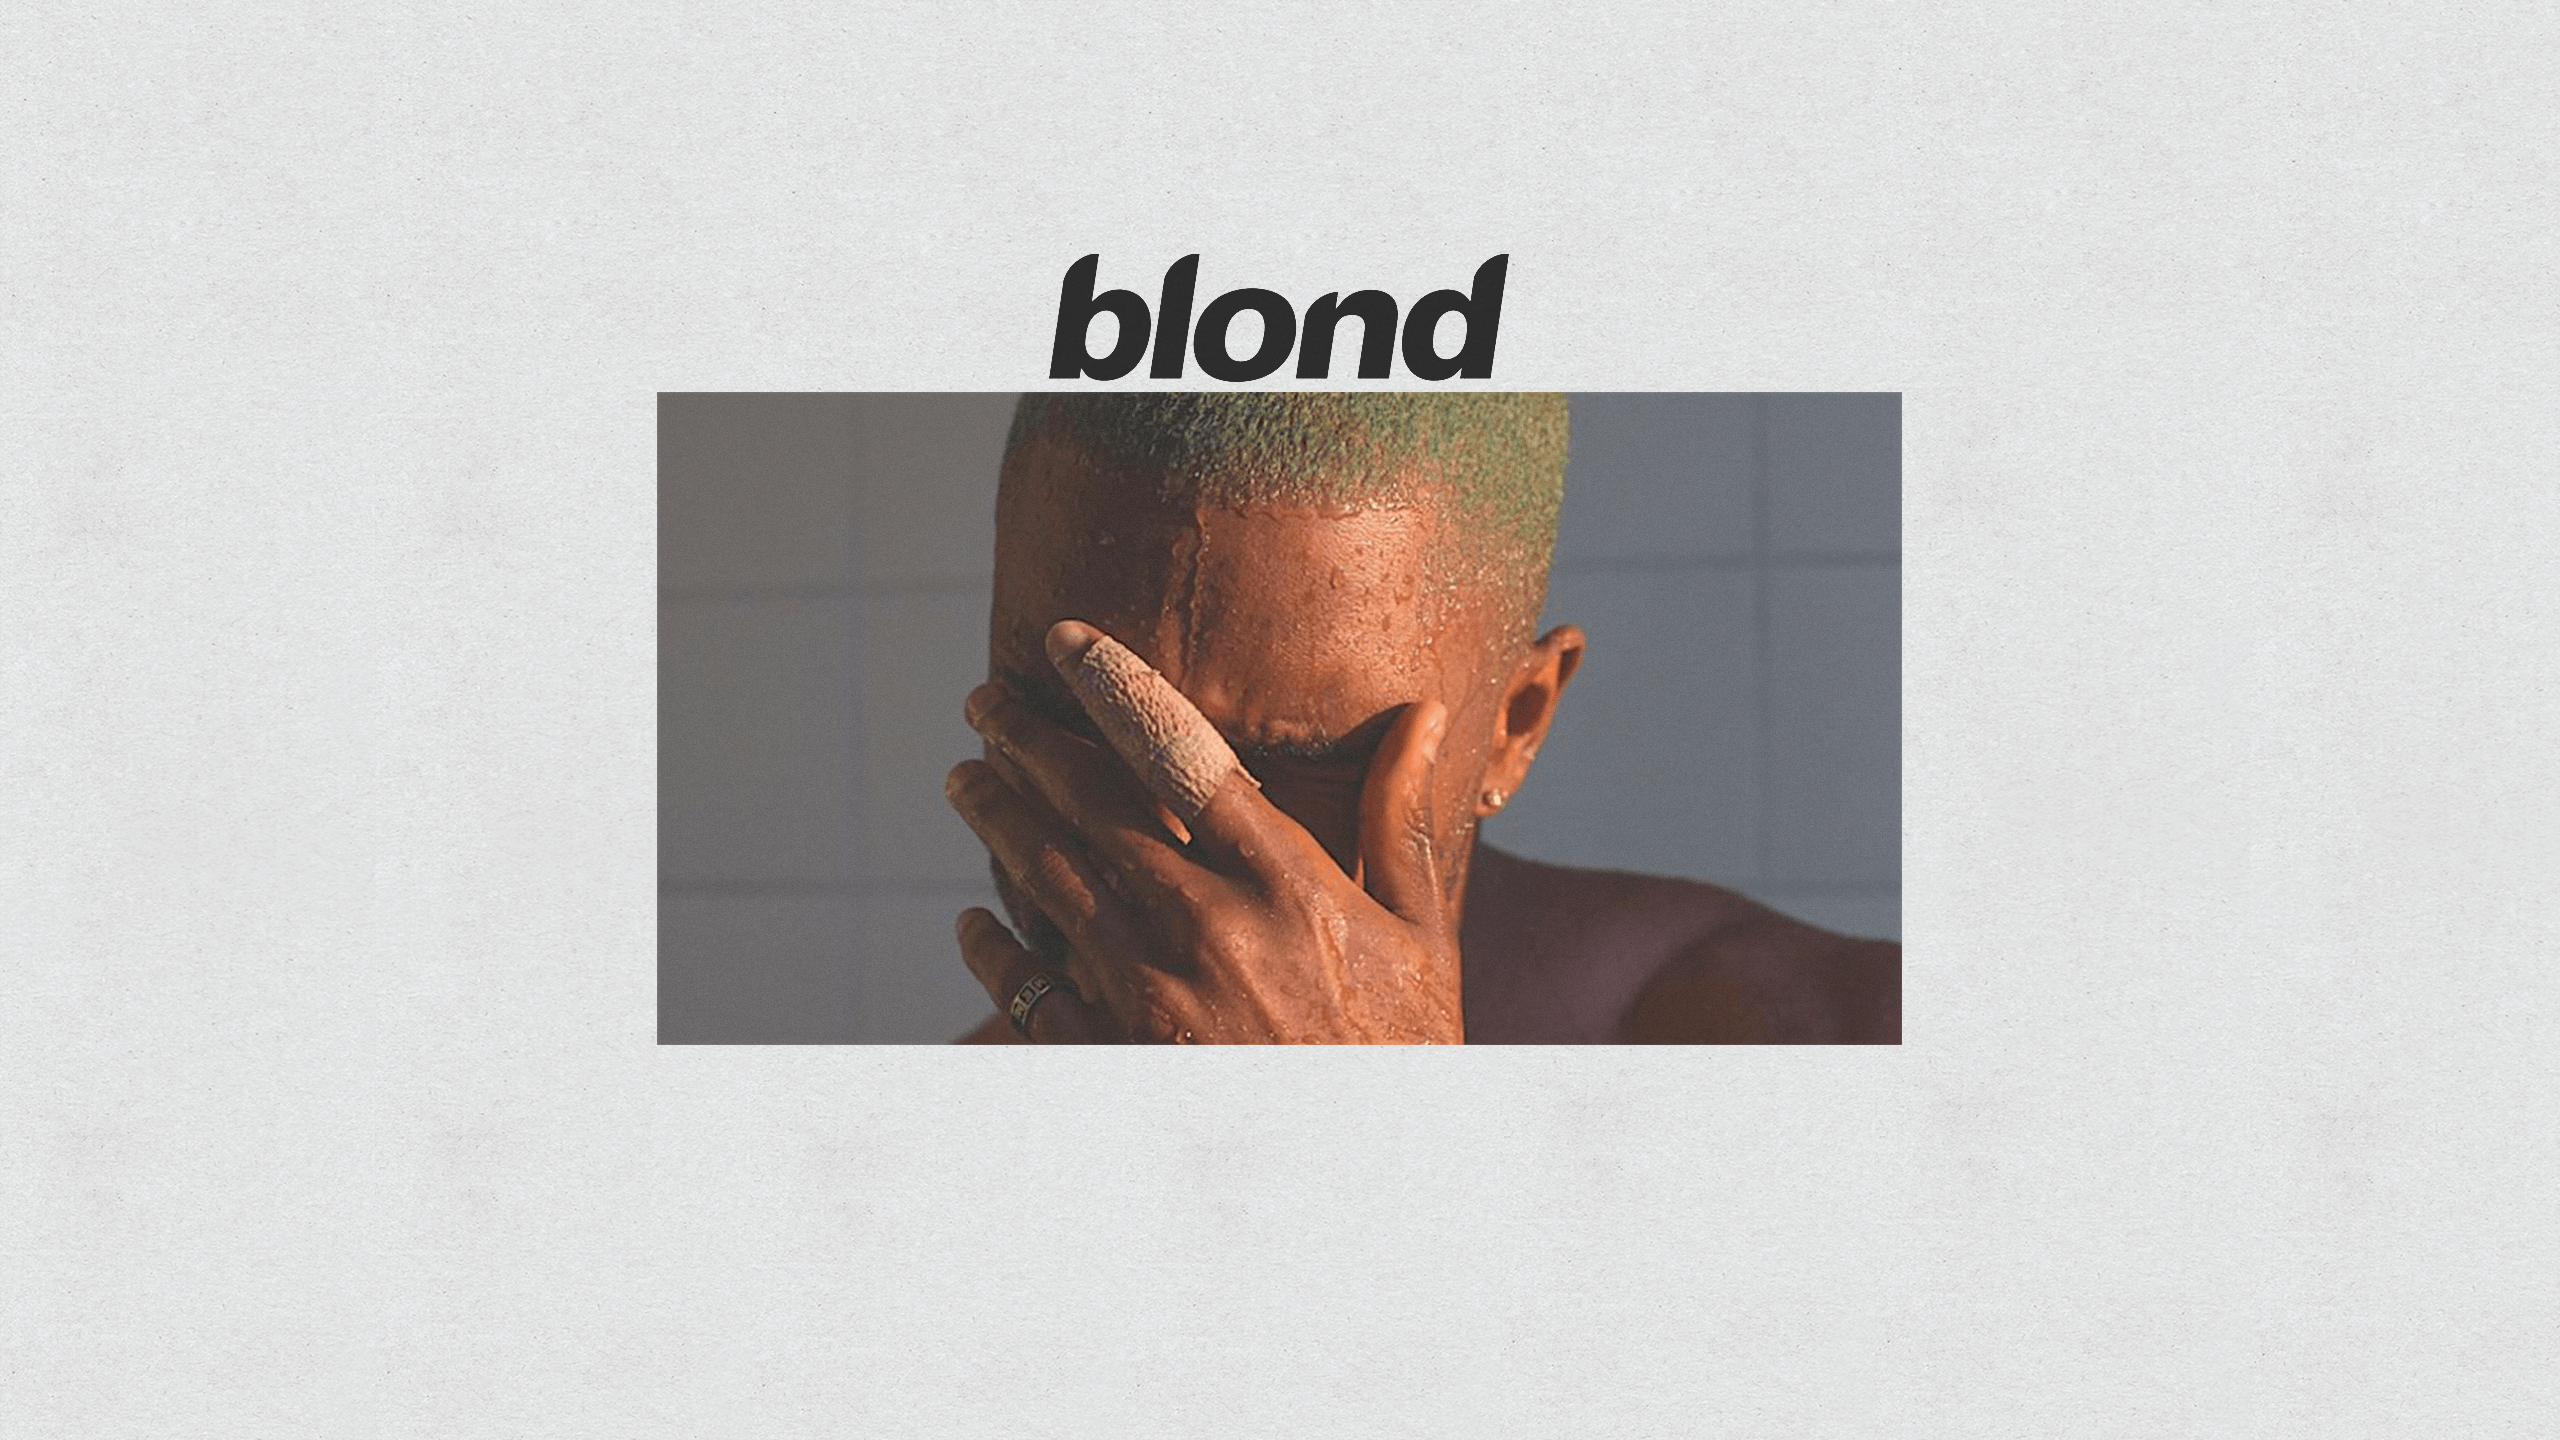 frank ocean blonde album cover itunes